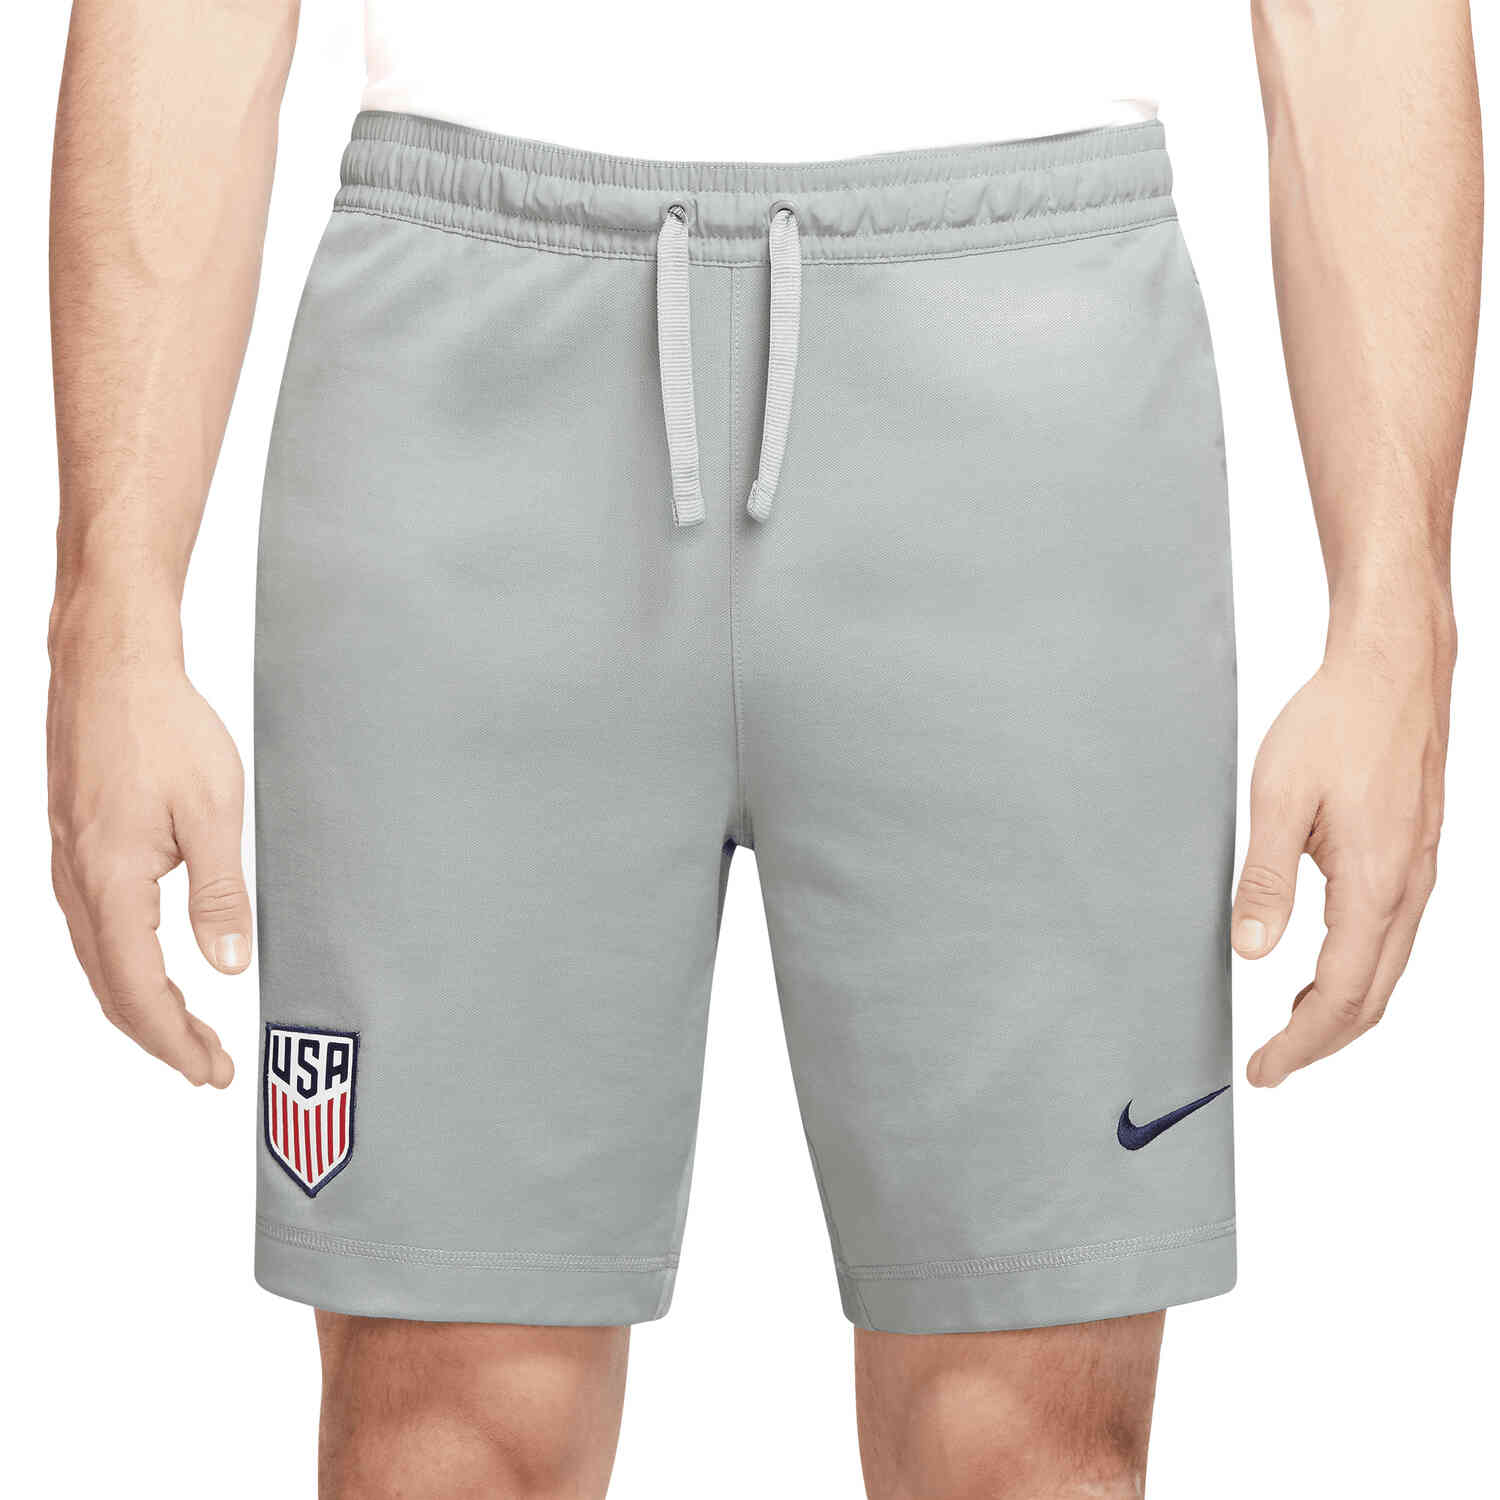 Nike USA Travel Shorts - Light Smoke Grey/Loyal Blue - SoccerPro